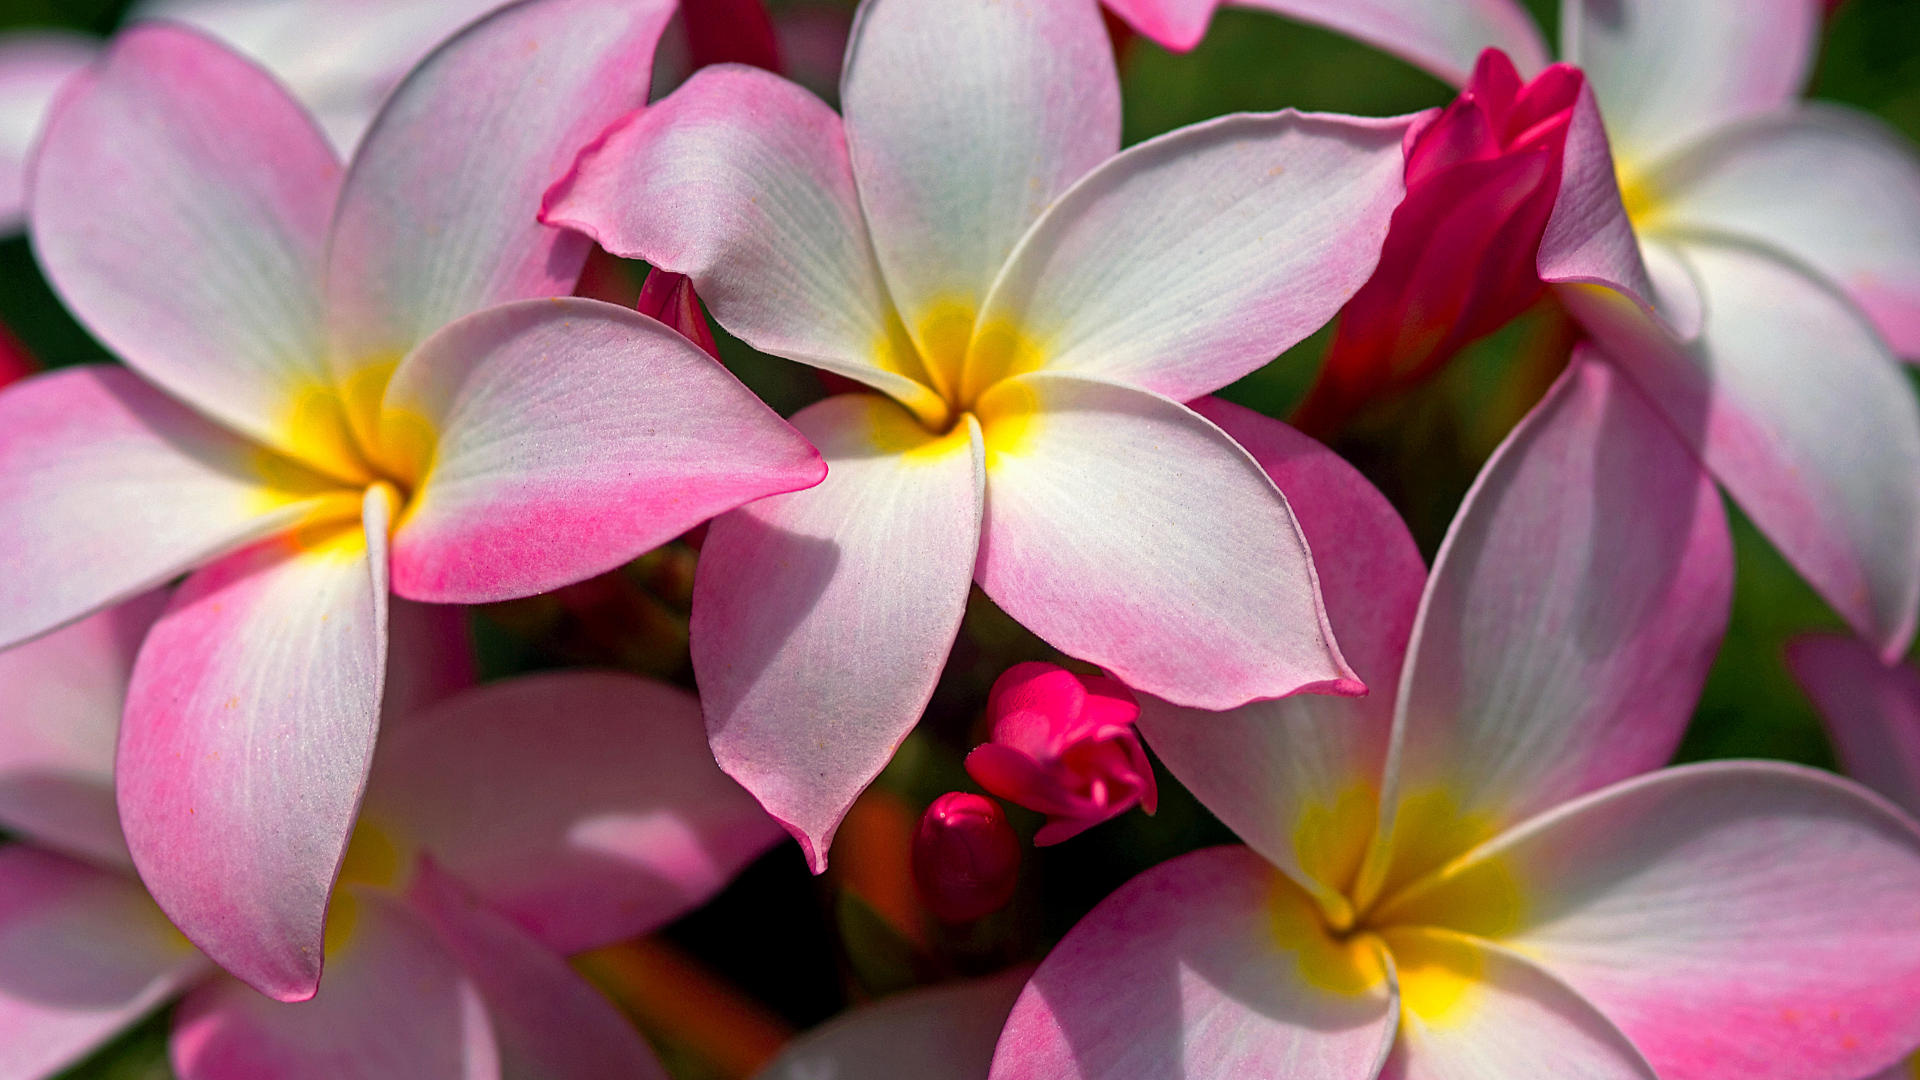 Beautiful Hawaiian flowers, Tropical paradise, Exotic blooms, Floral splendor, 1920x1080 Full HD Desktop